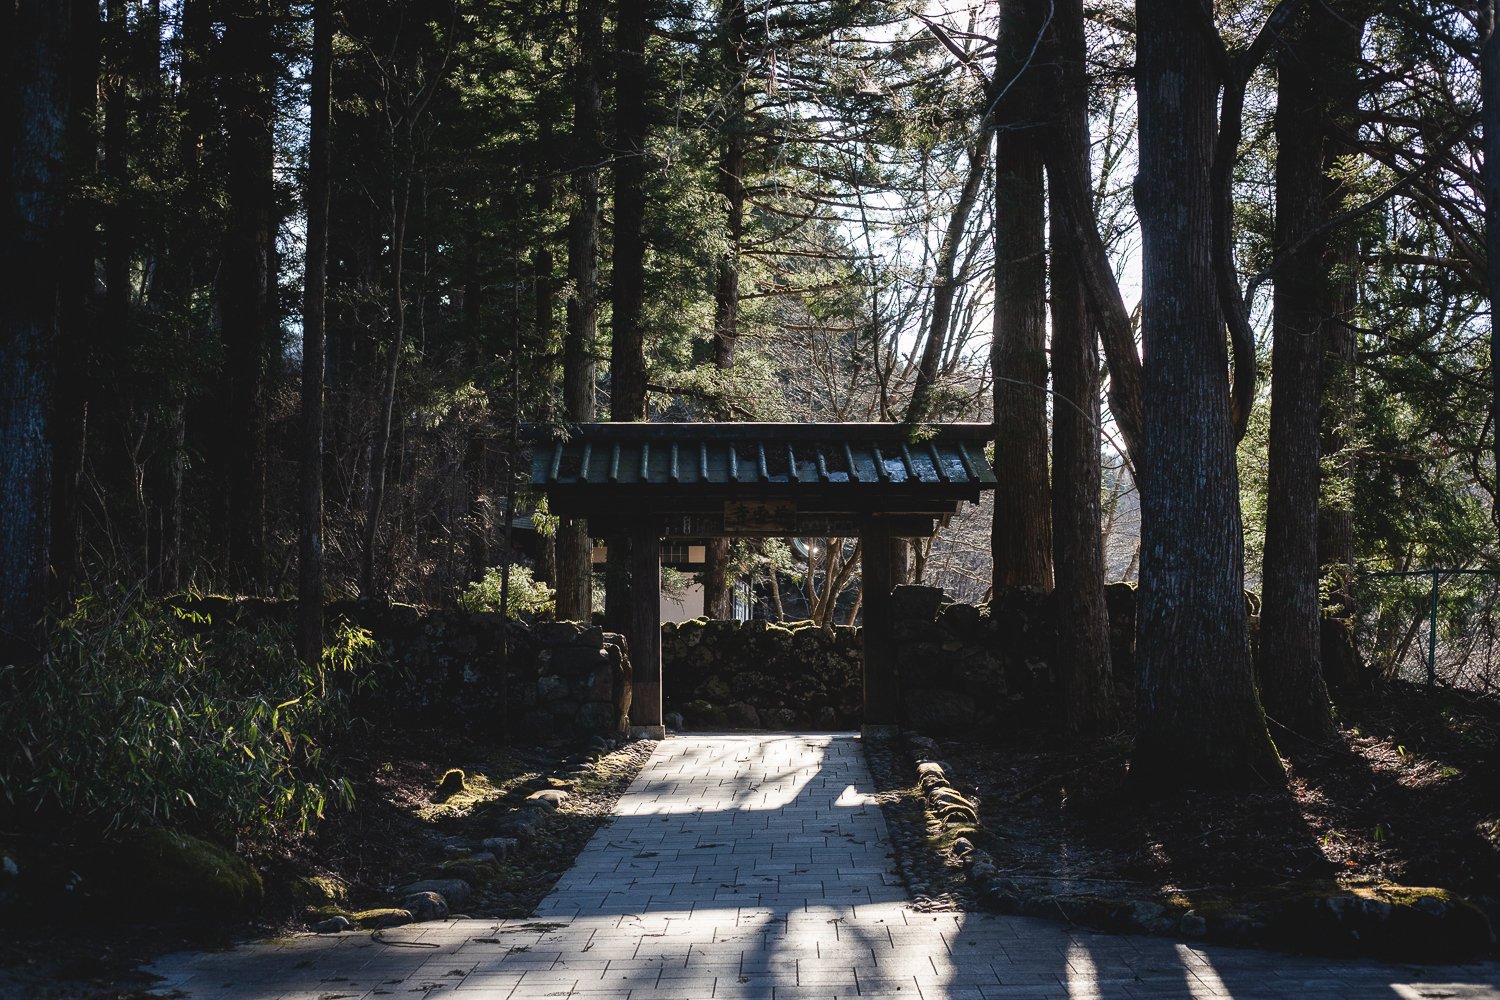 Un chemin pavé mène vers un portal en bois au milieu des arbres.